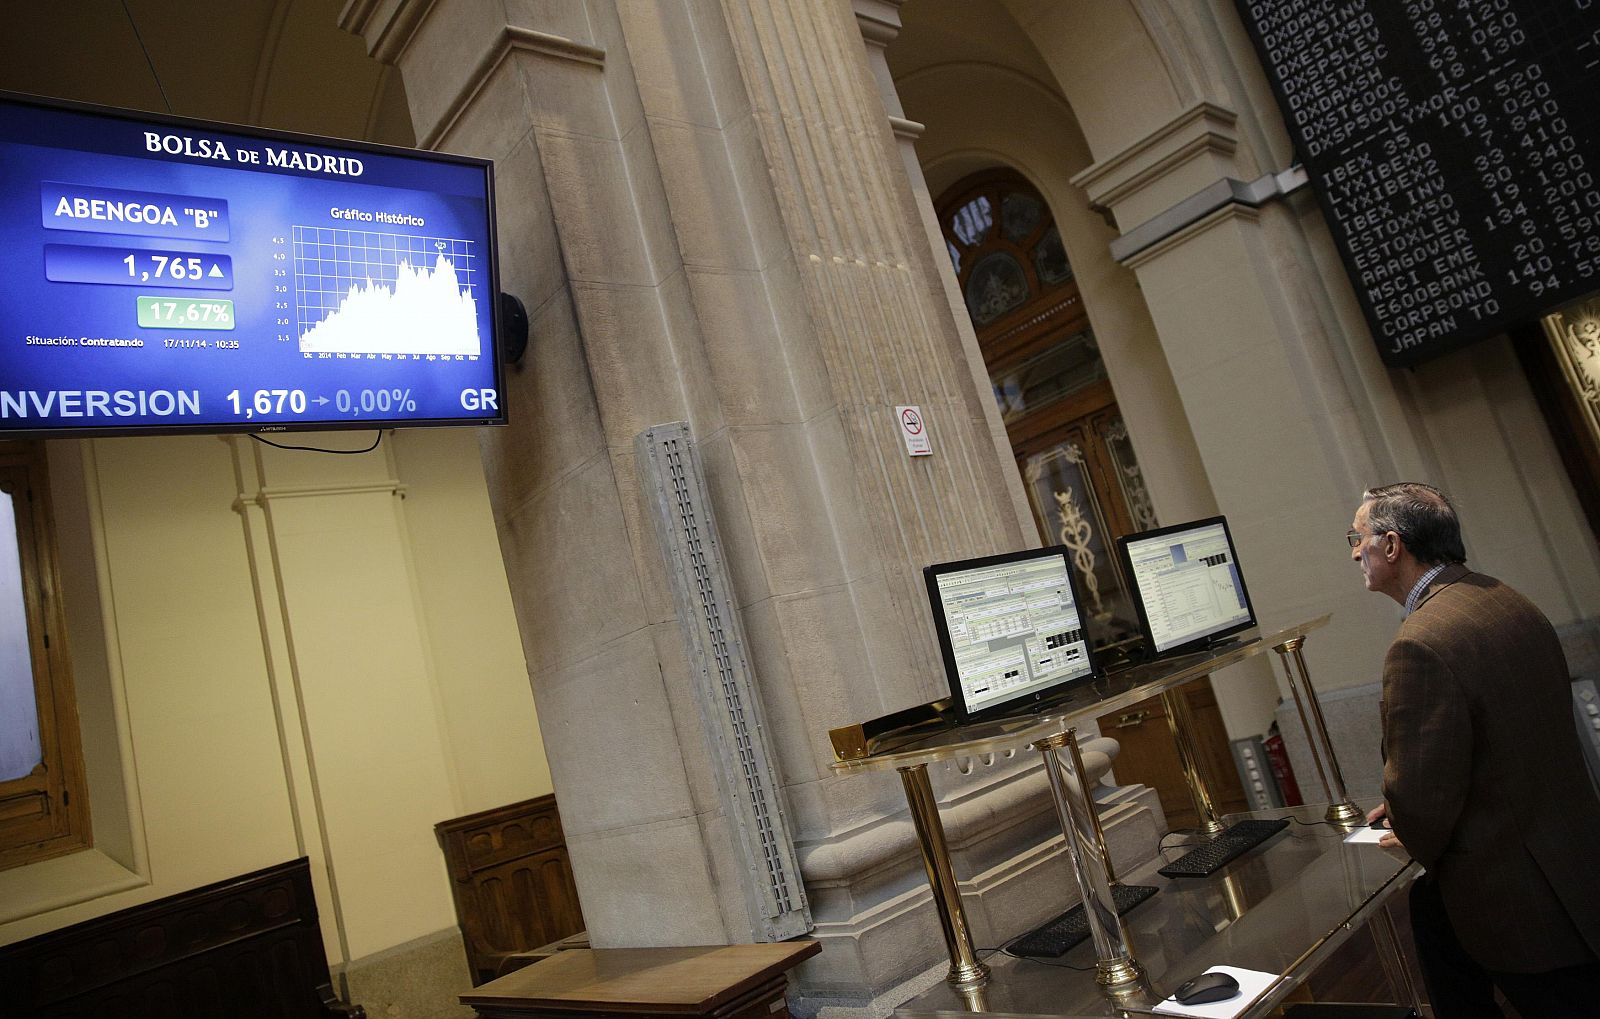 Un monitor en la Bolsa de Madrid muestra la cotización de Abengoa